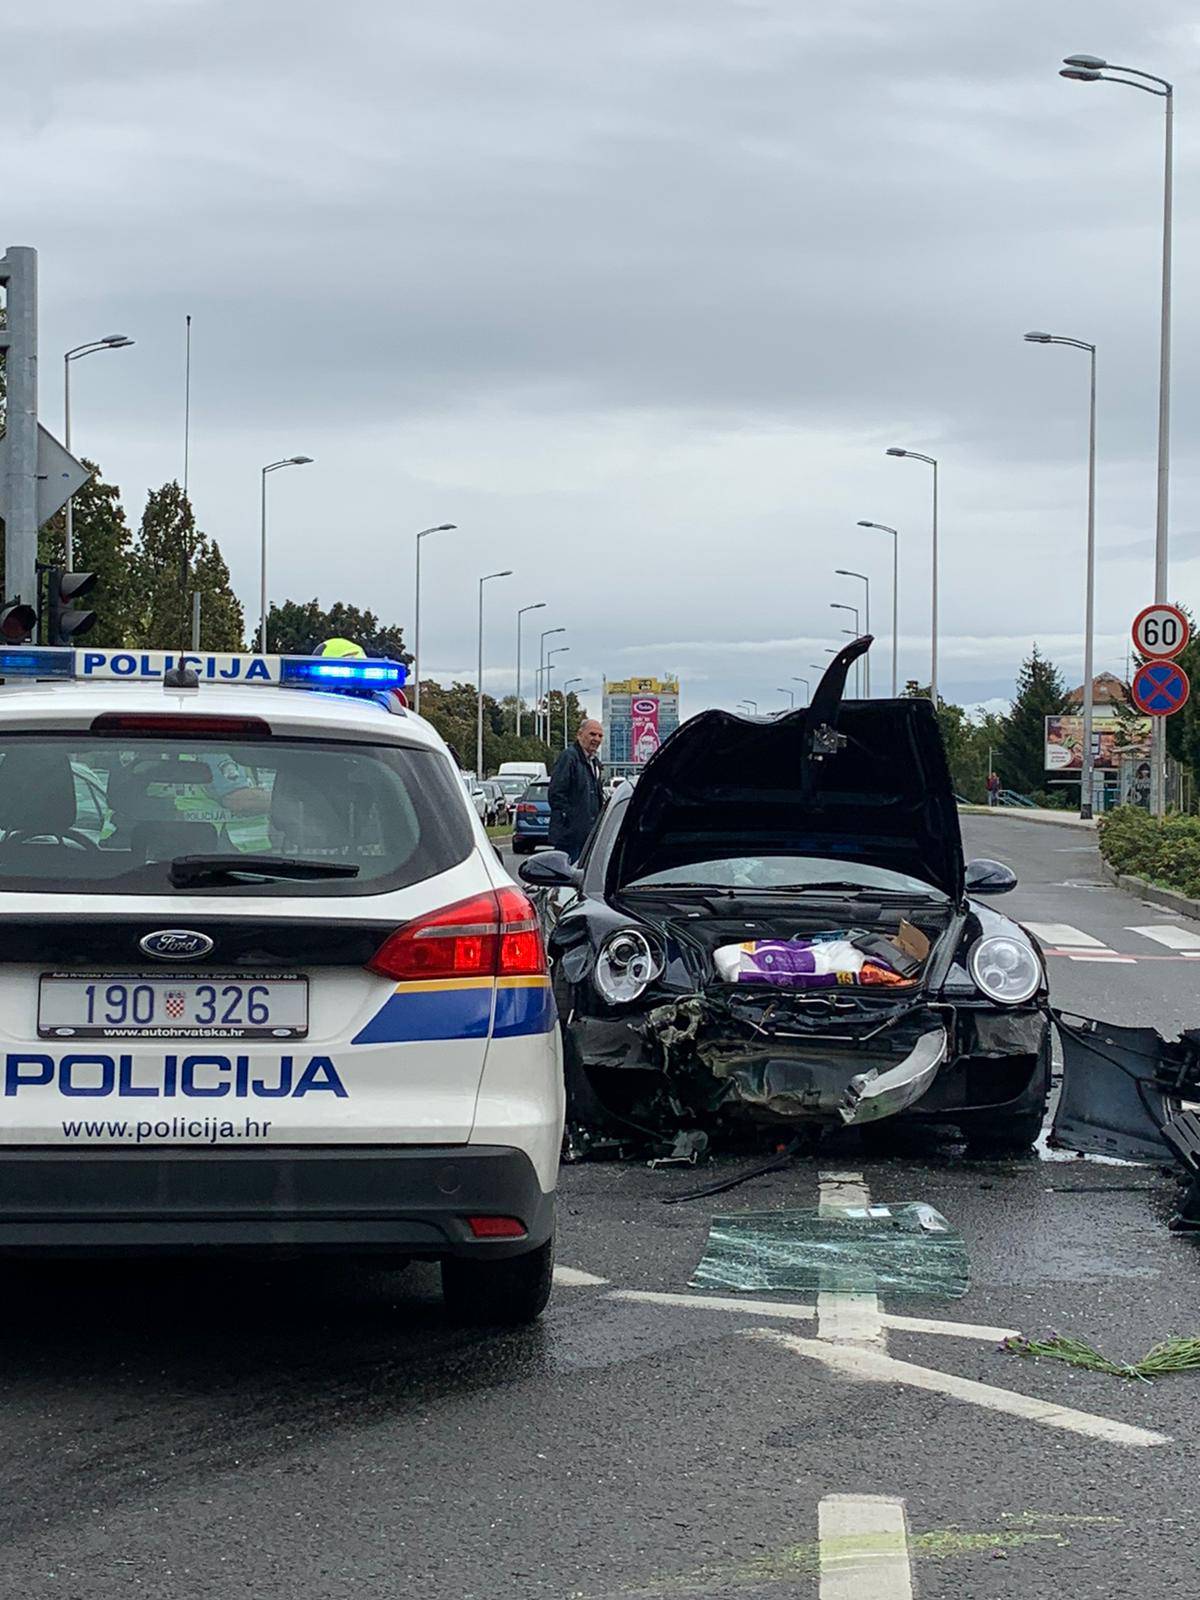 Sudarili se Porsche i BMW u Zagrebu, ozlijeđeno dvoje ljudi